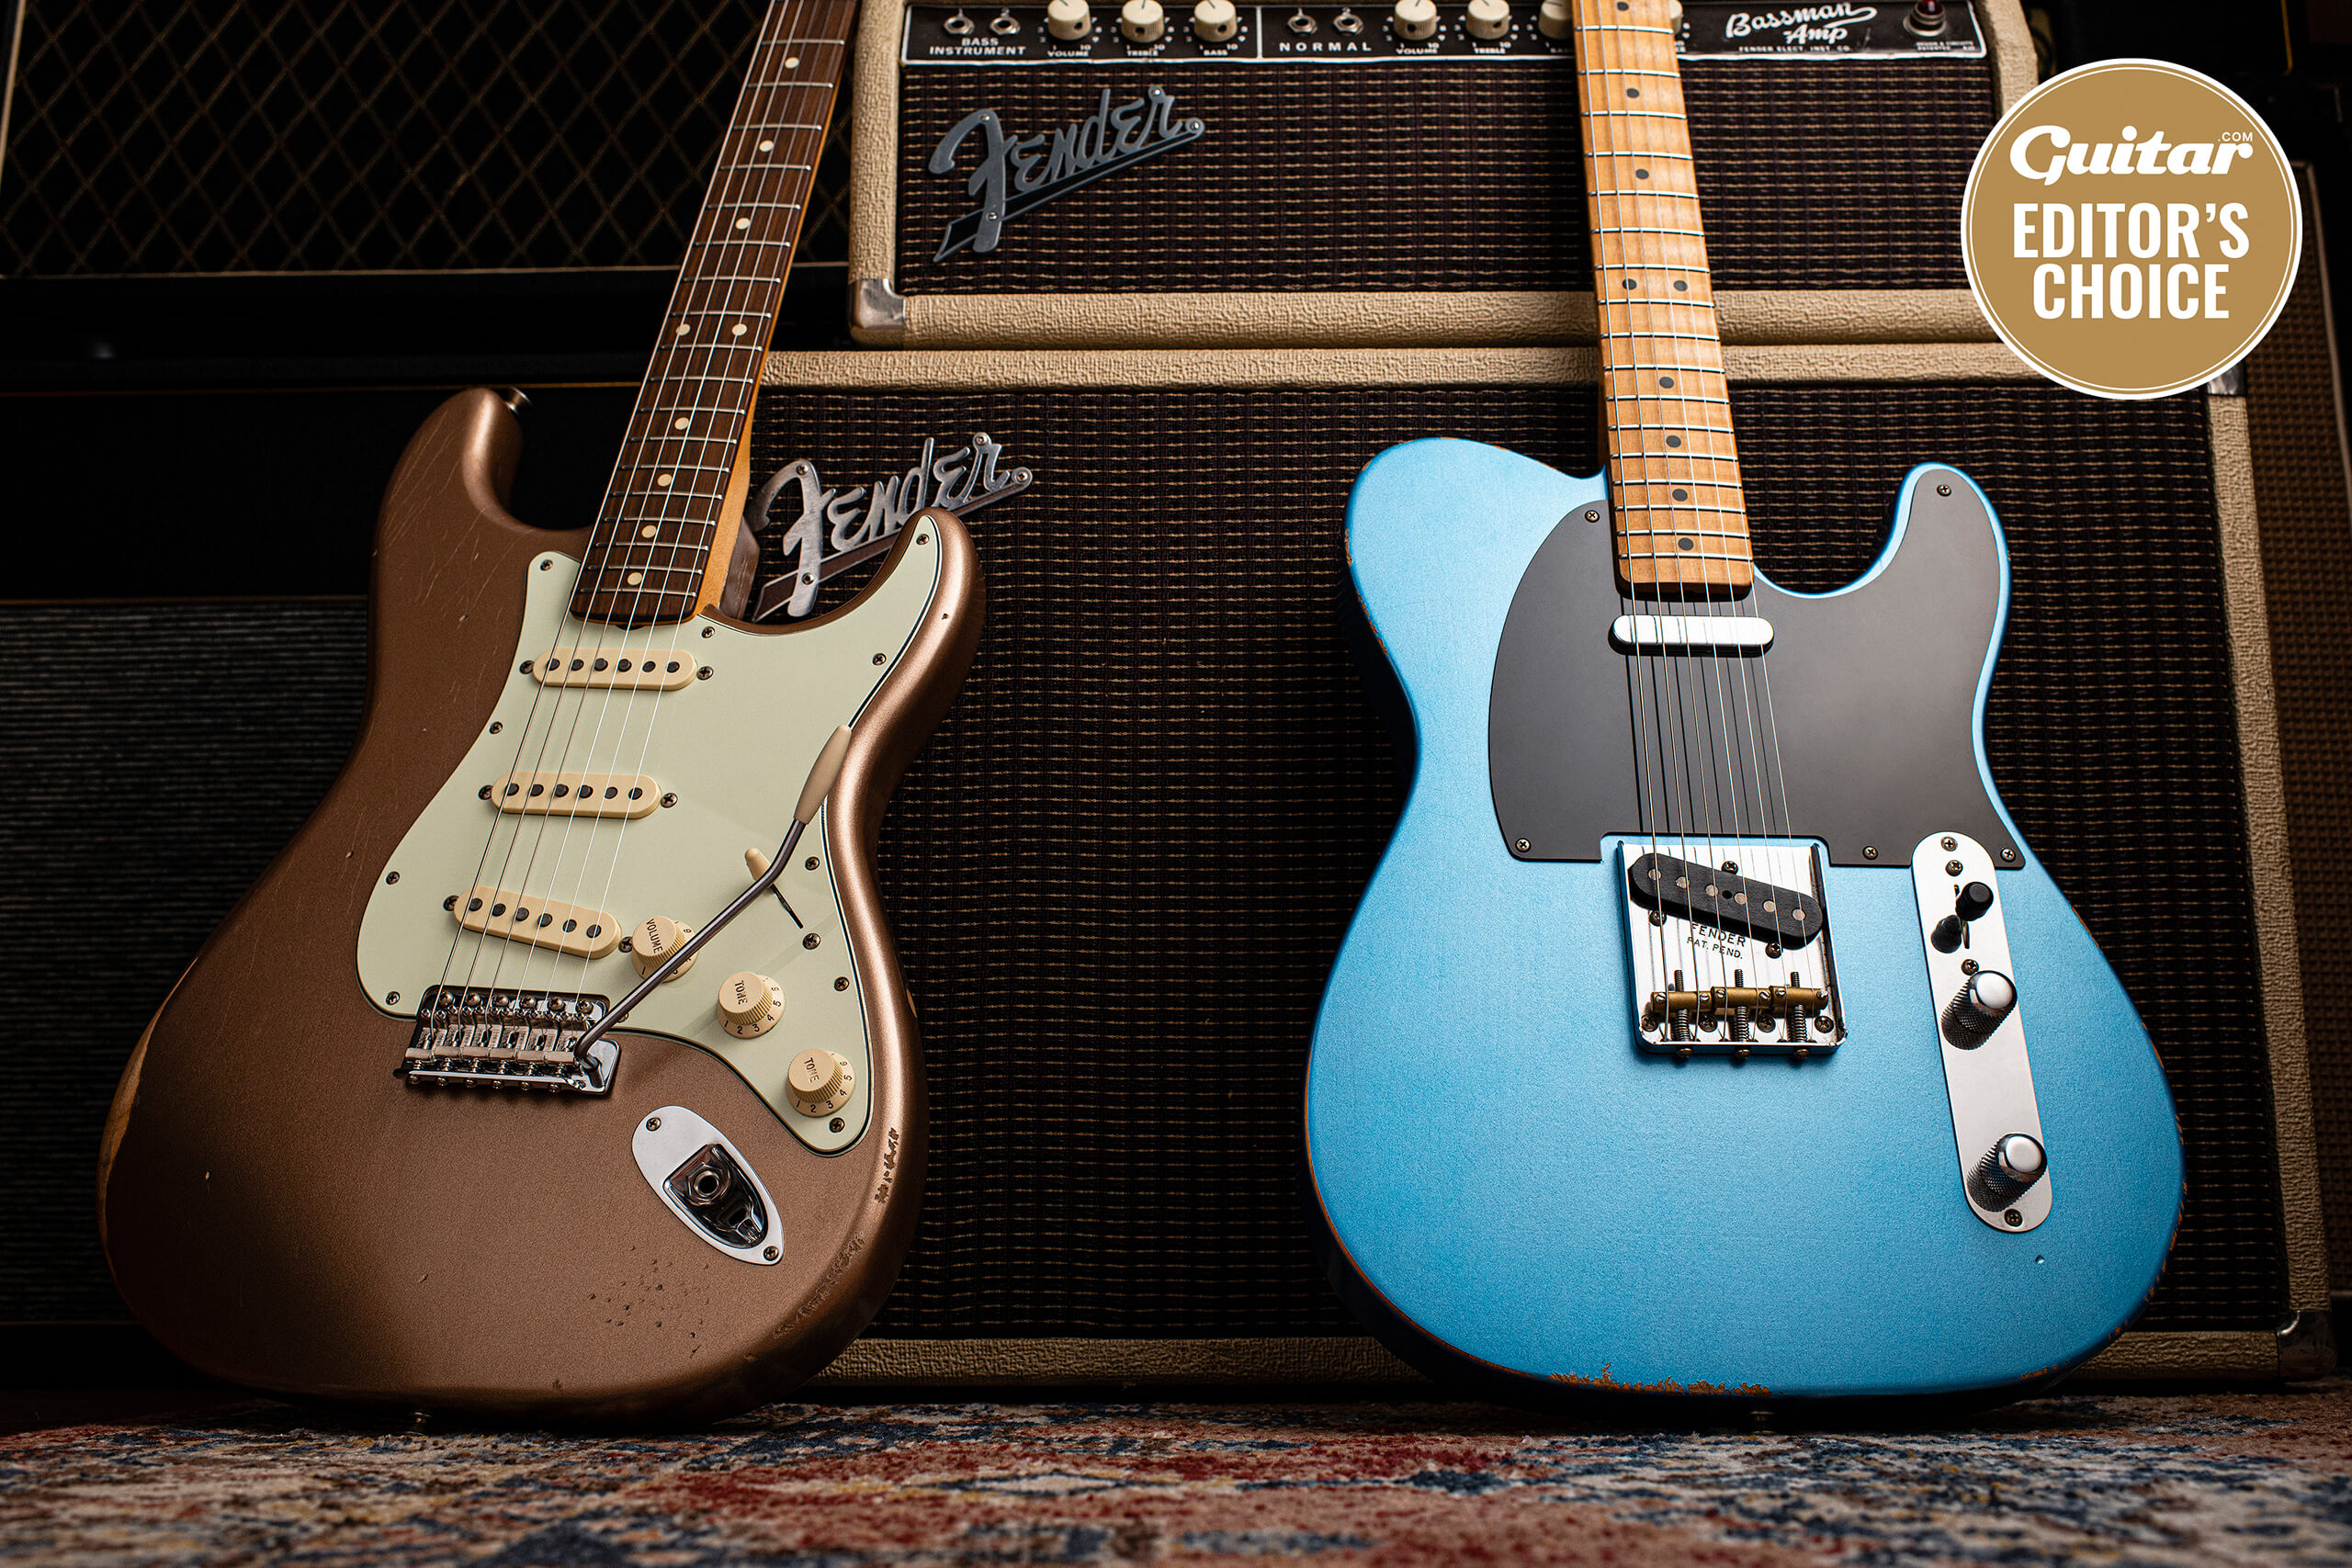 芬达温特拉路磨损的50年代电视和60年代的Stratocaster